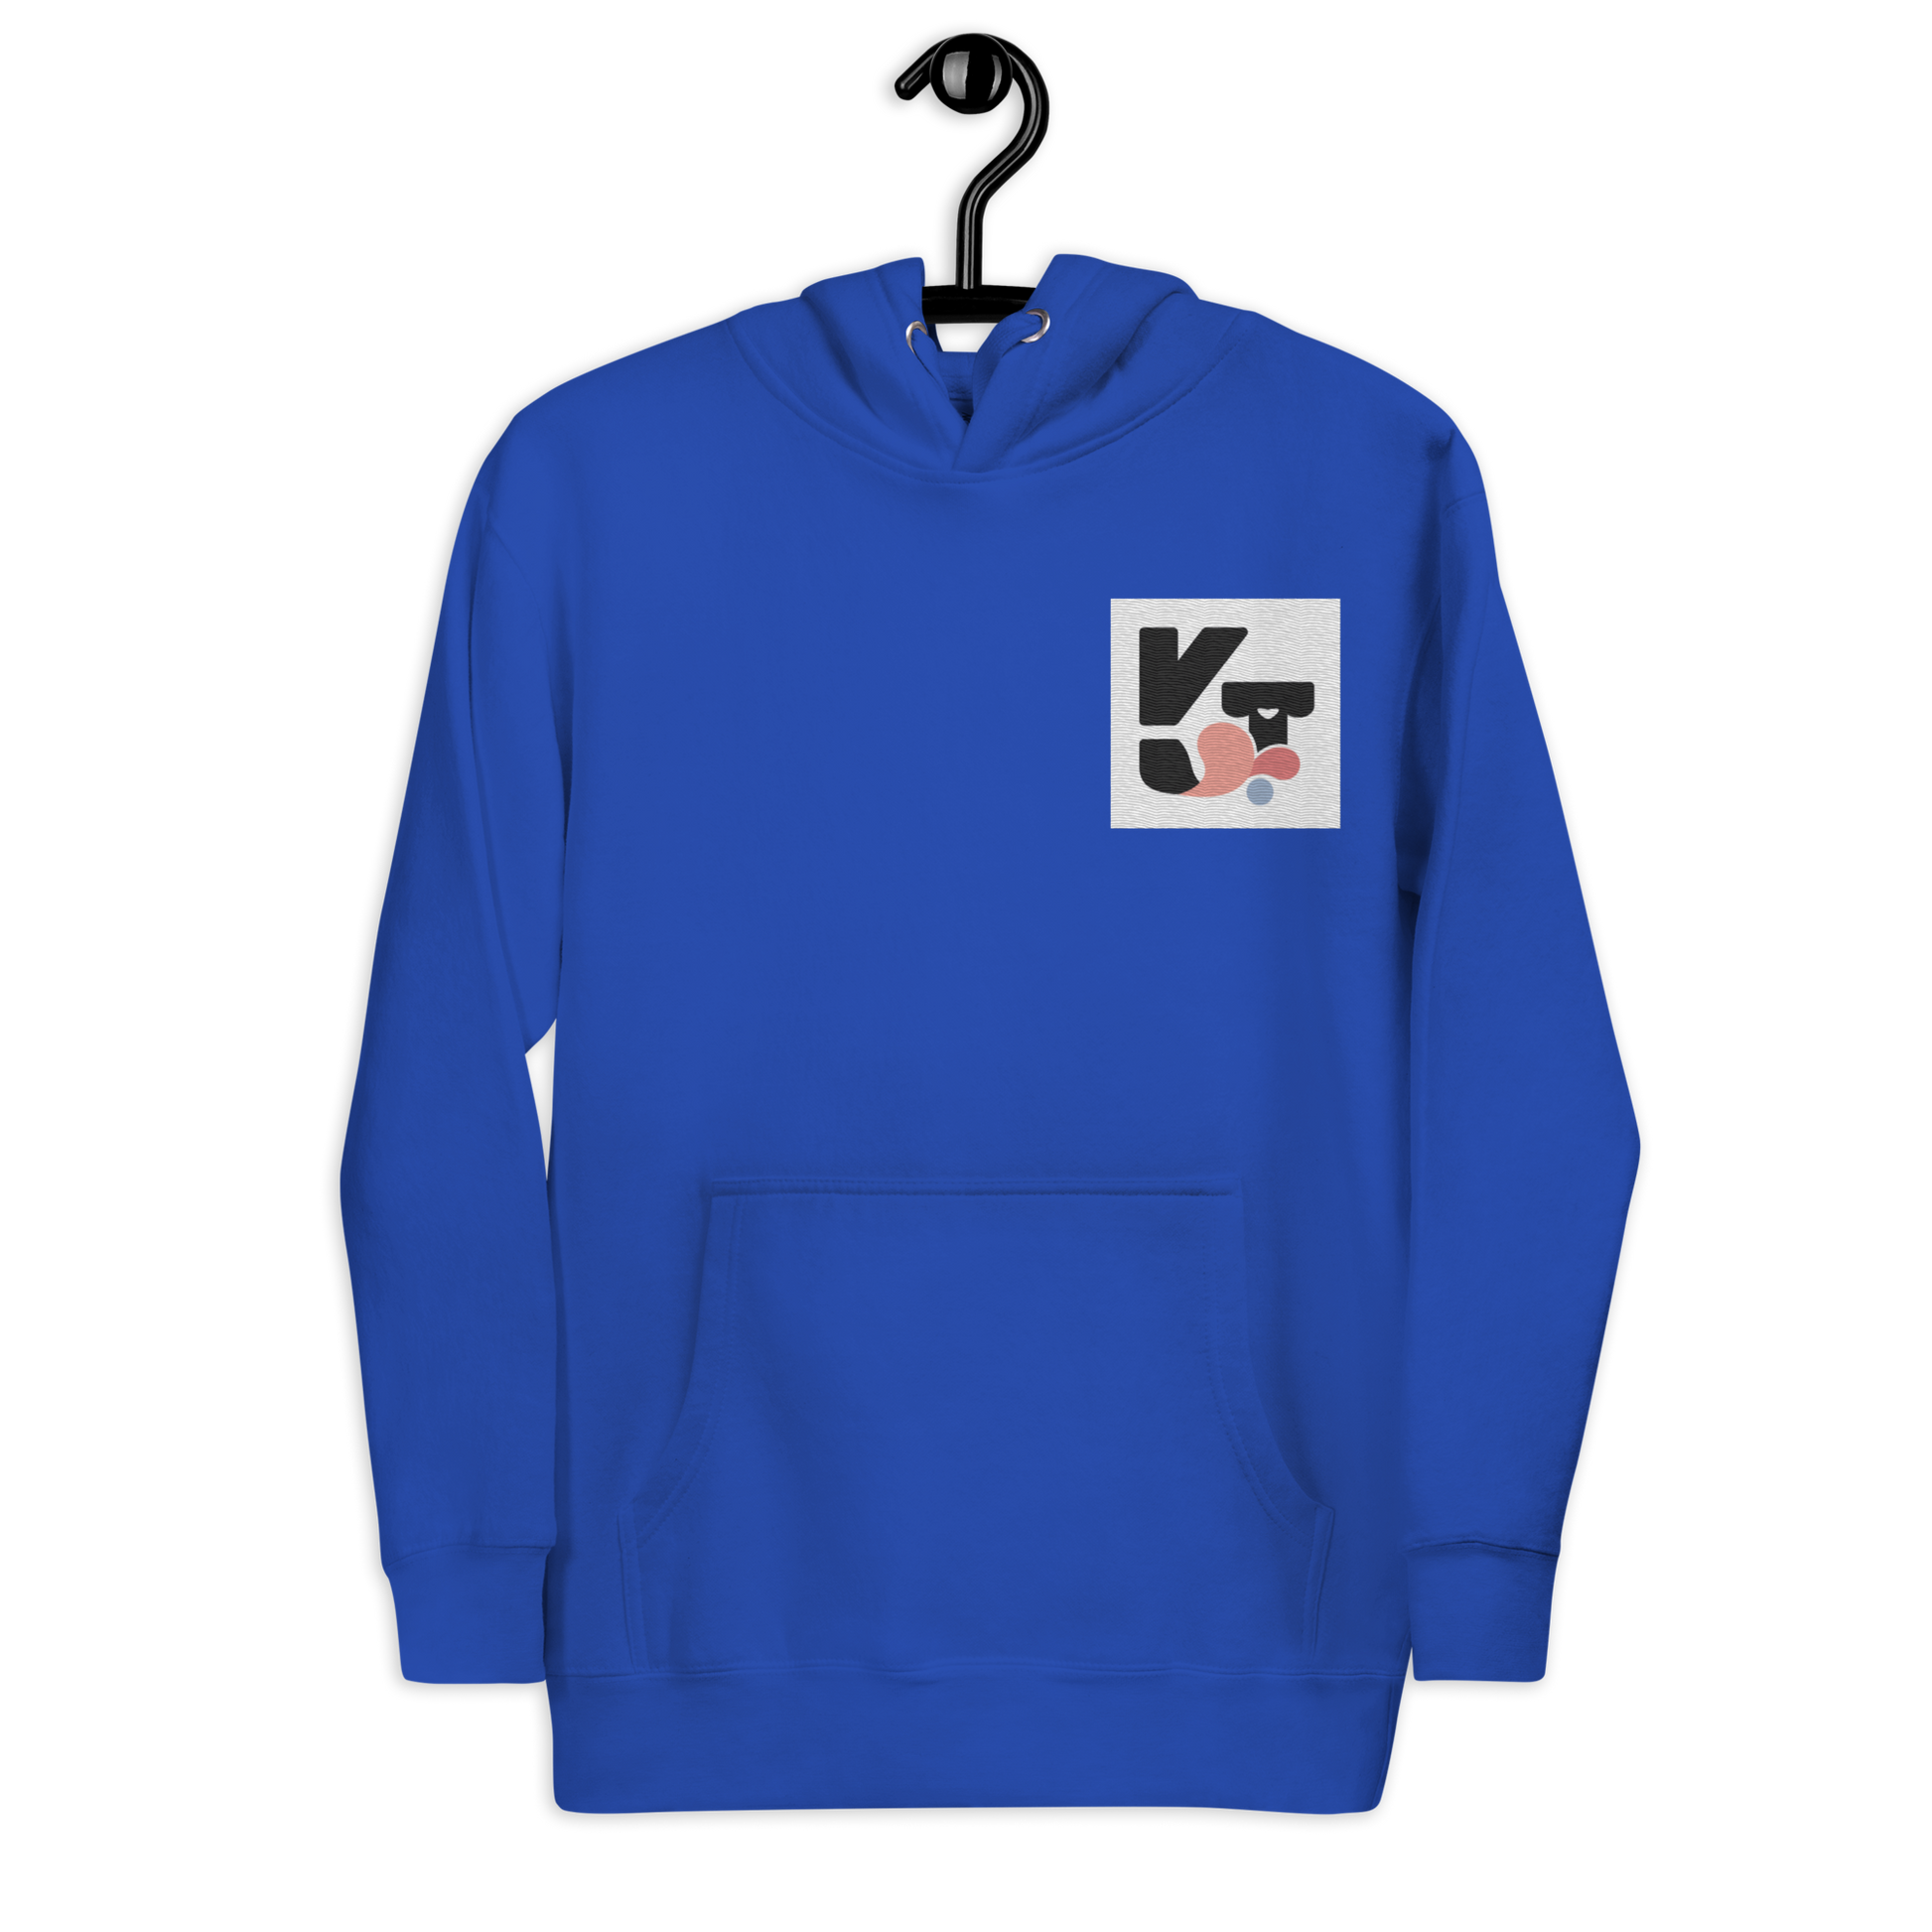 Unisex-Kapuzenpullover "Wip Wip Hurra" in blauer Farbe mit Markenlogo von Klexgetier. Modisches und sportliches Design für Hundefreunde und Agility-Fans.